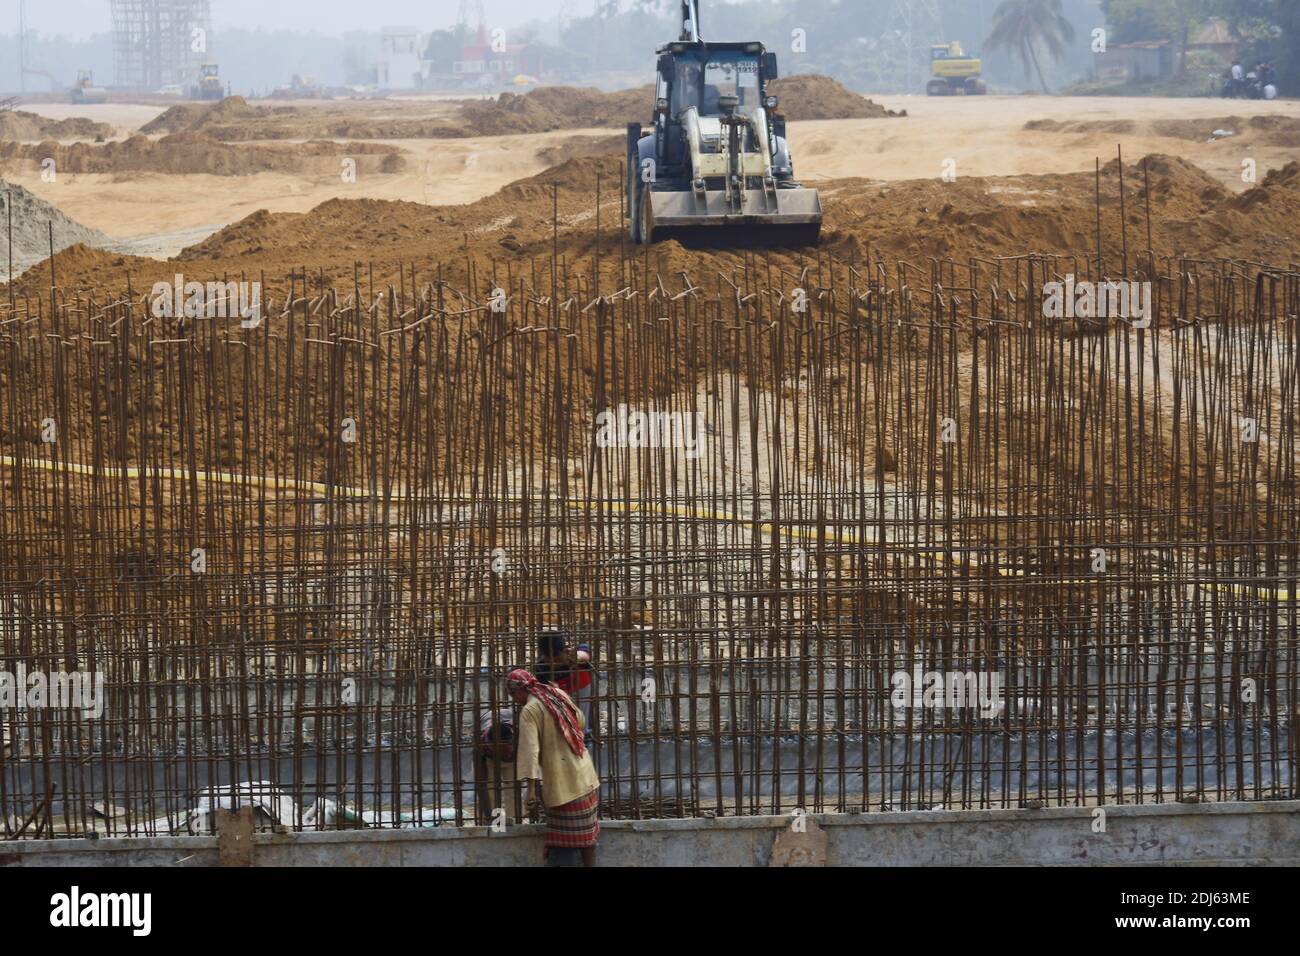 Verlegung von Gleisen und anderen damit verbundenen Bauarbeiten in vollem Gange in Nischintapur, in den Peripherien der Stadt Agartala gelegen. Ein weiteres großes Eisenbahnprojekt, das Indien und Bangladesch durch Tripura verbindet, steht an der Schwelle zur Fertigstellung. Agartala, Tripura, Indien. Stockfoto